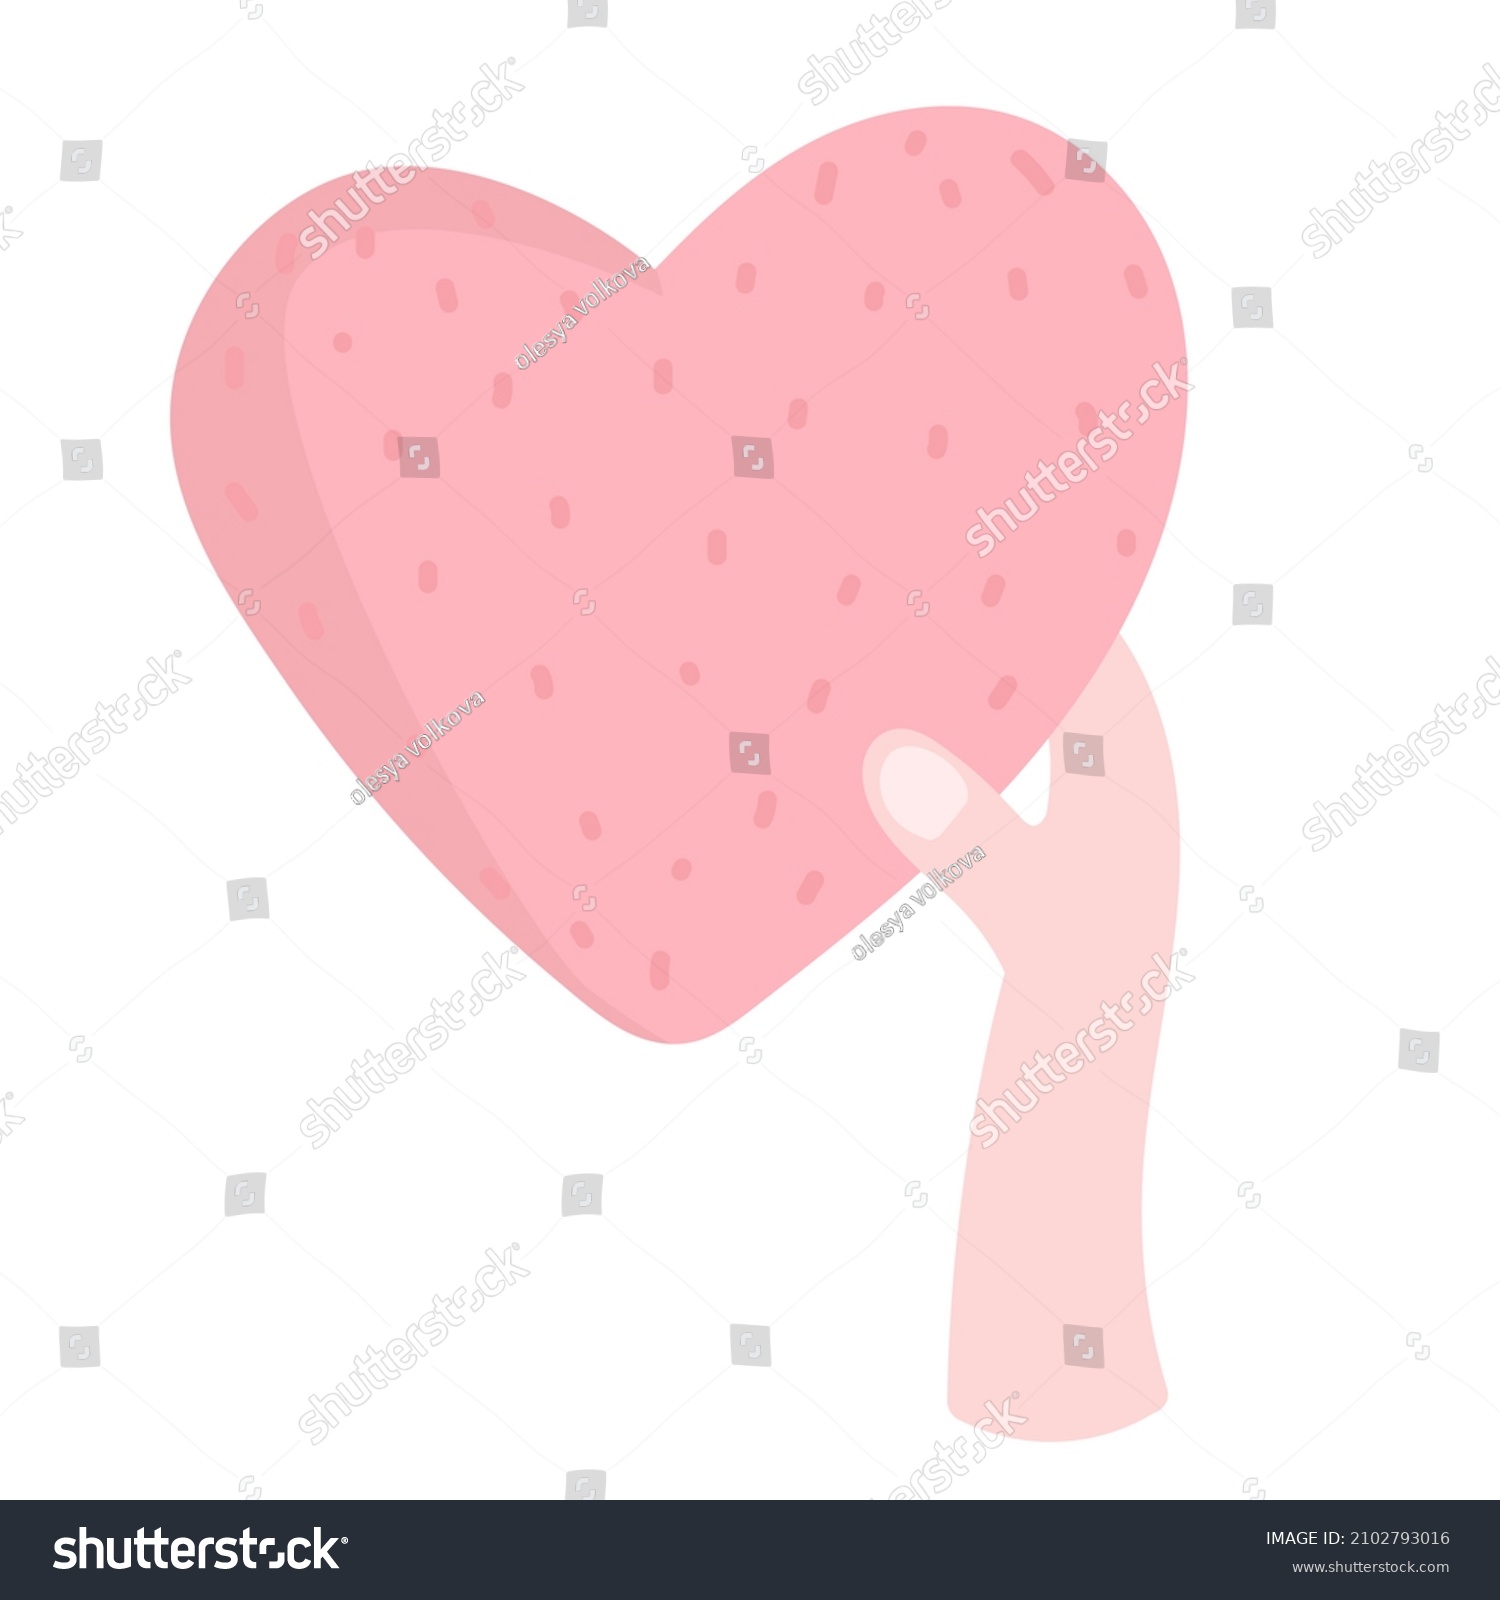 Hands Holding Heart Vector Cartoon Illustration Stock Illustration 2102793016 Shutterstock